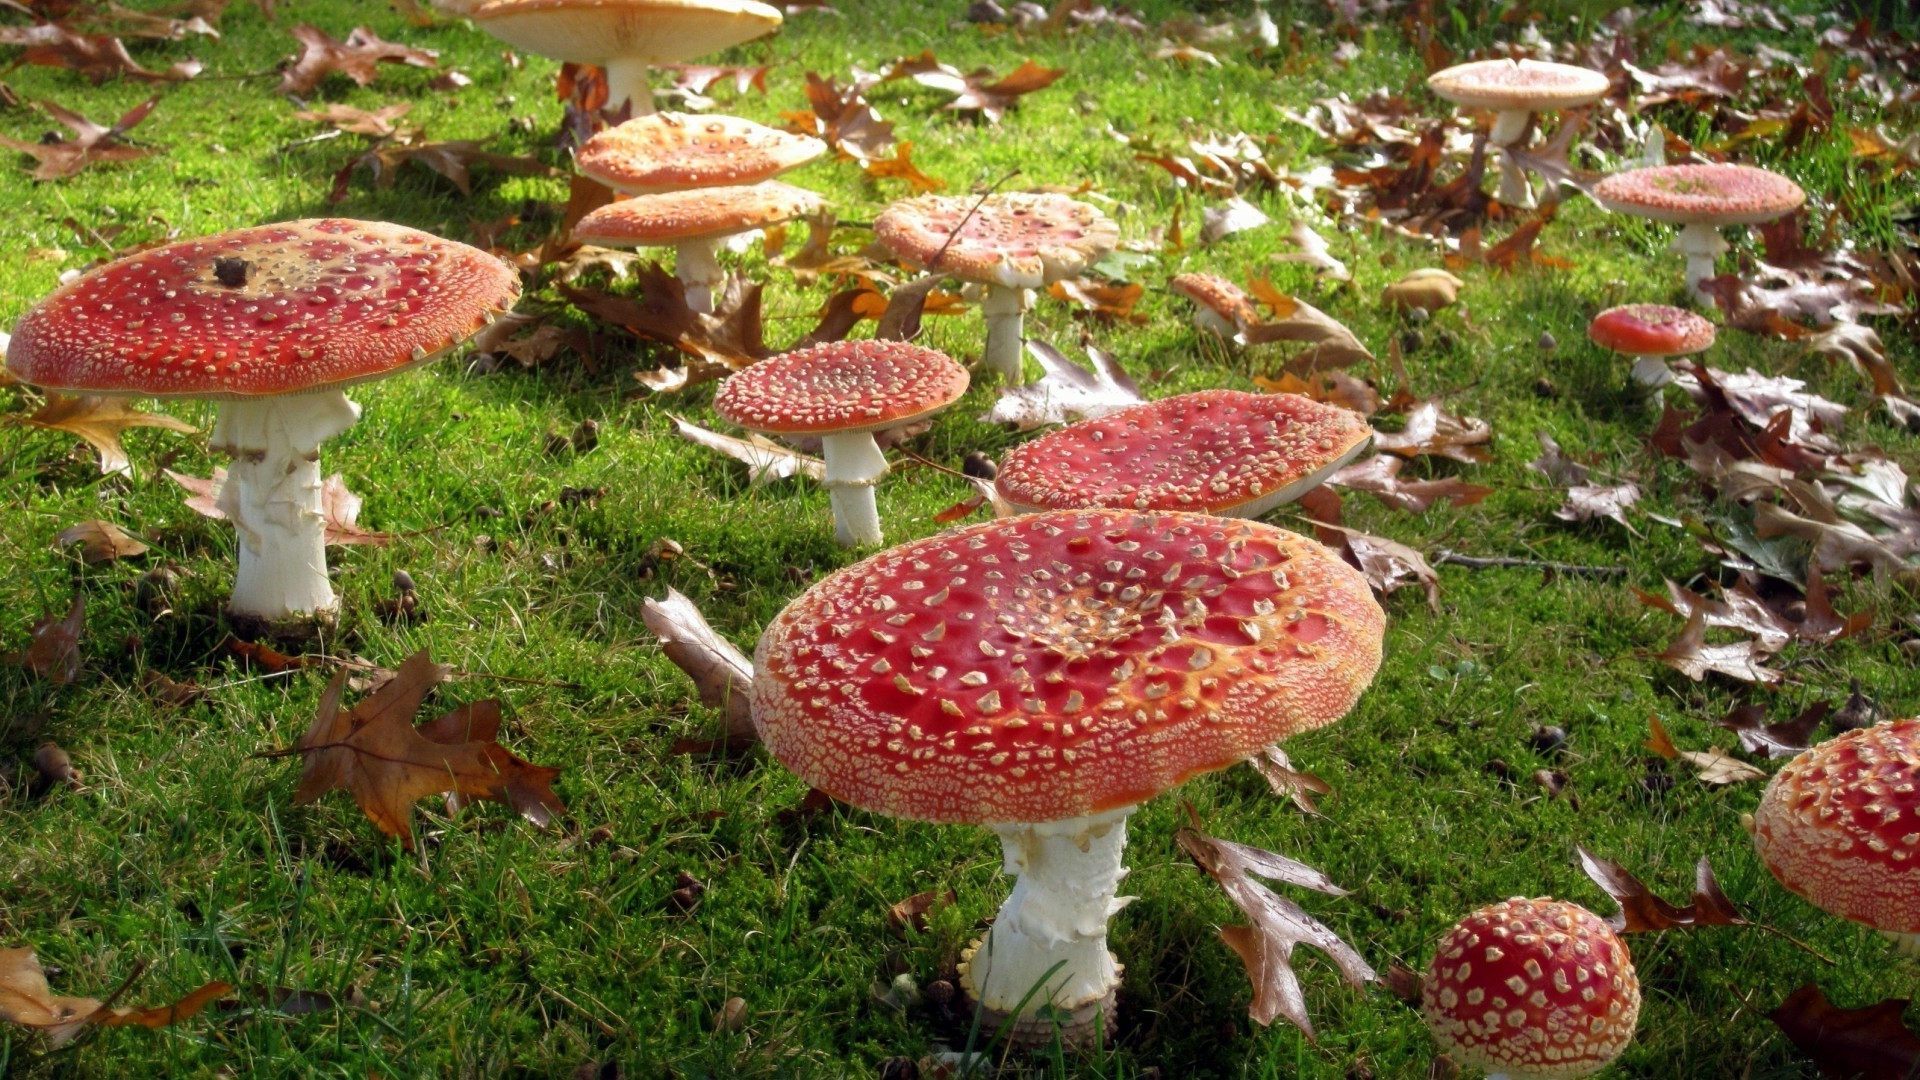 грибы гриб грибок осень поганки природа трава сезон древесины токсичные лист флора крышка мох на открытом воздухе яд съедобные еда боровик